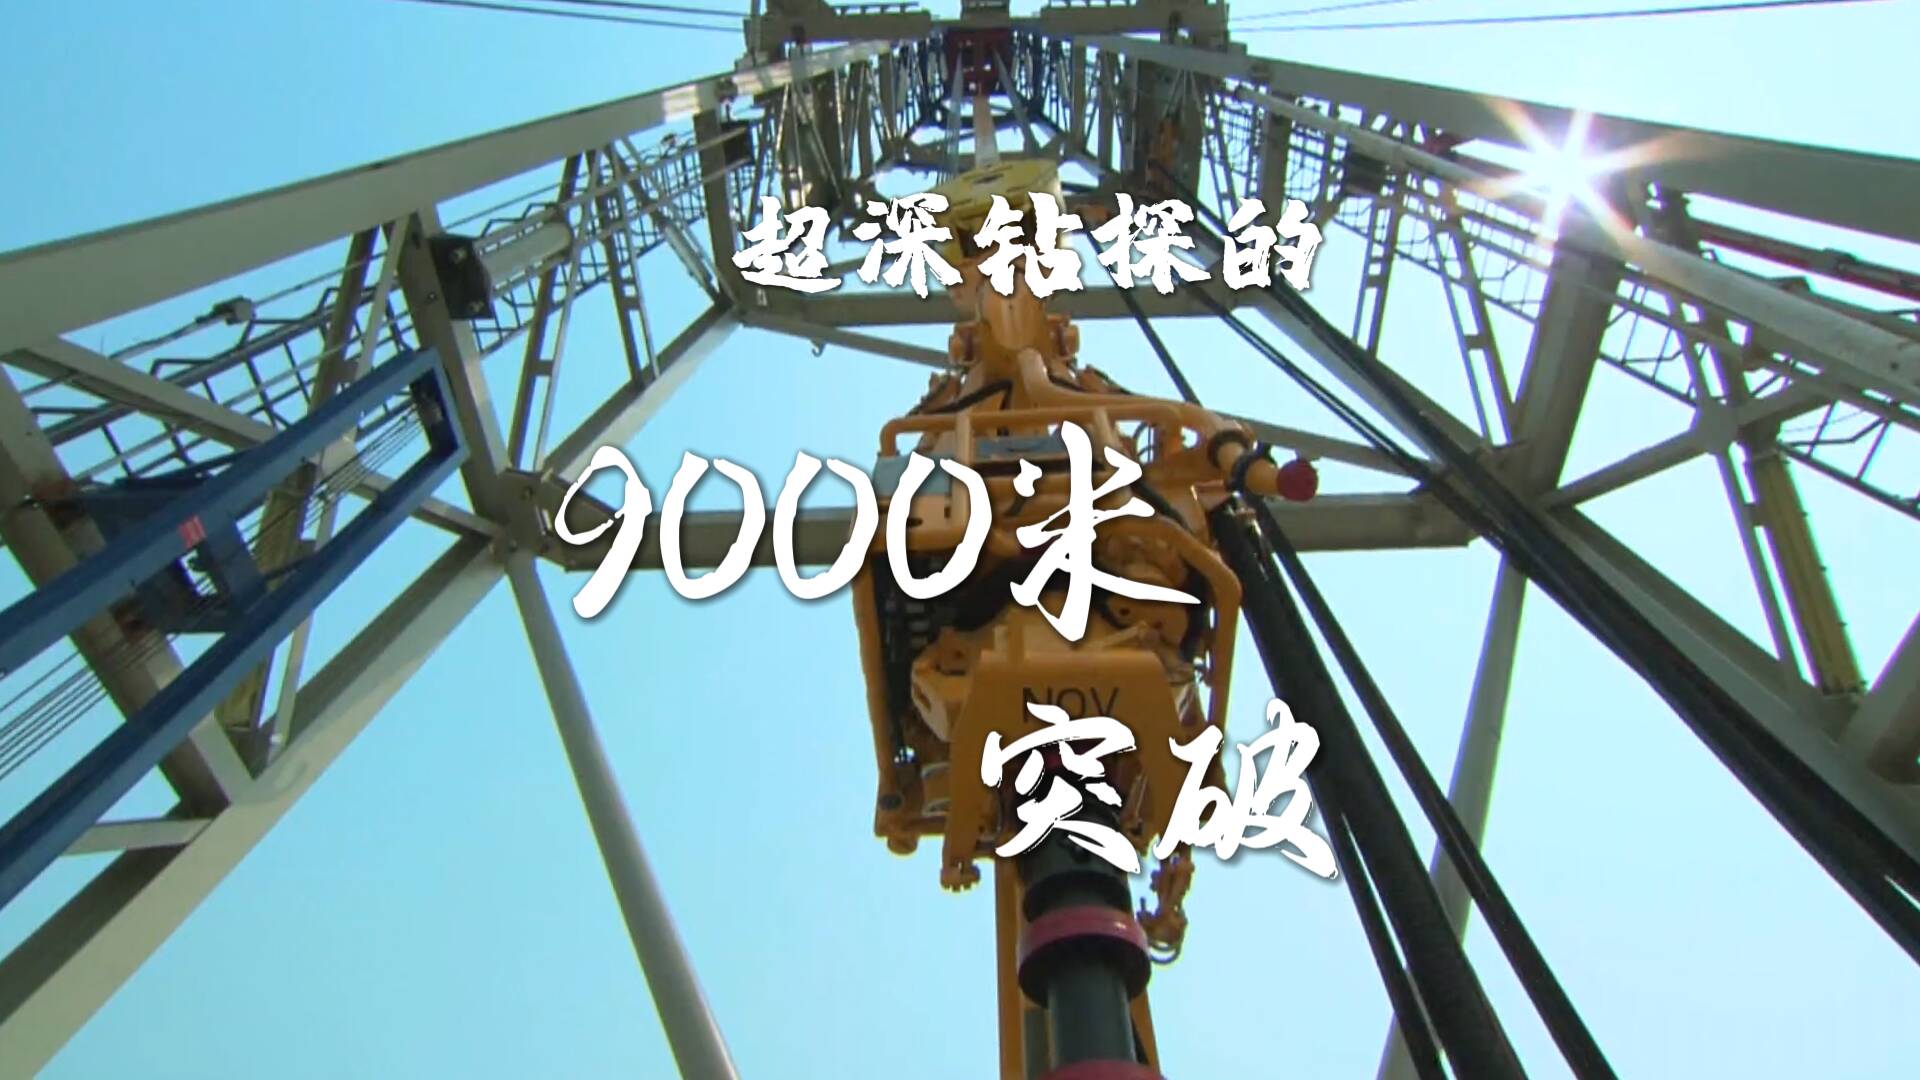 工业之美｜超深钻探的9000米突破 全球80多个国家的石油装备来自山东智造